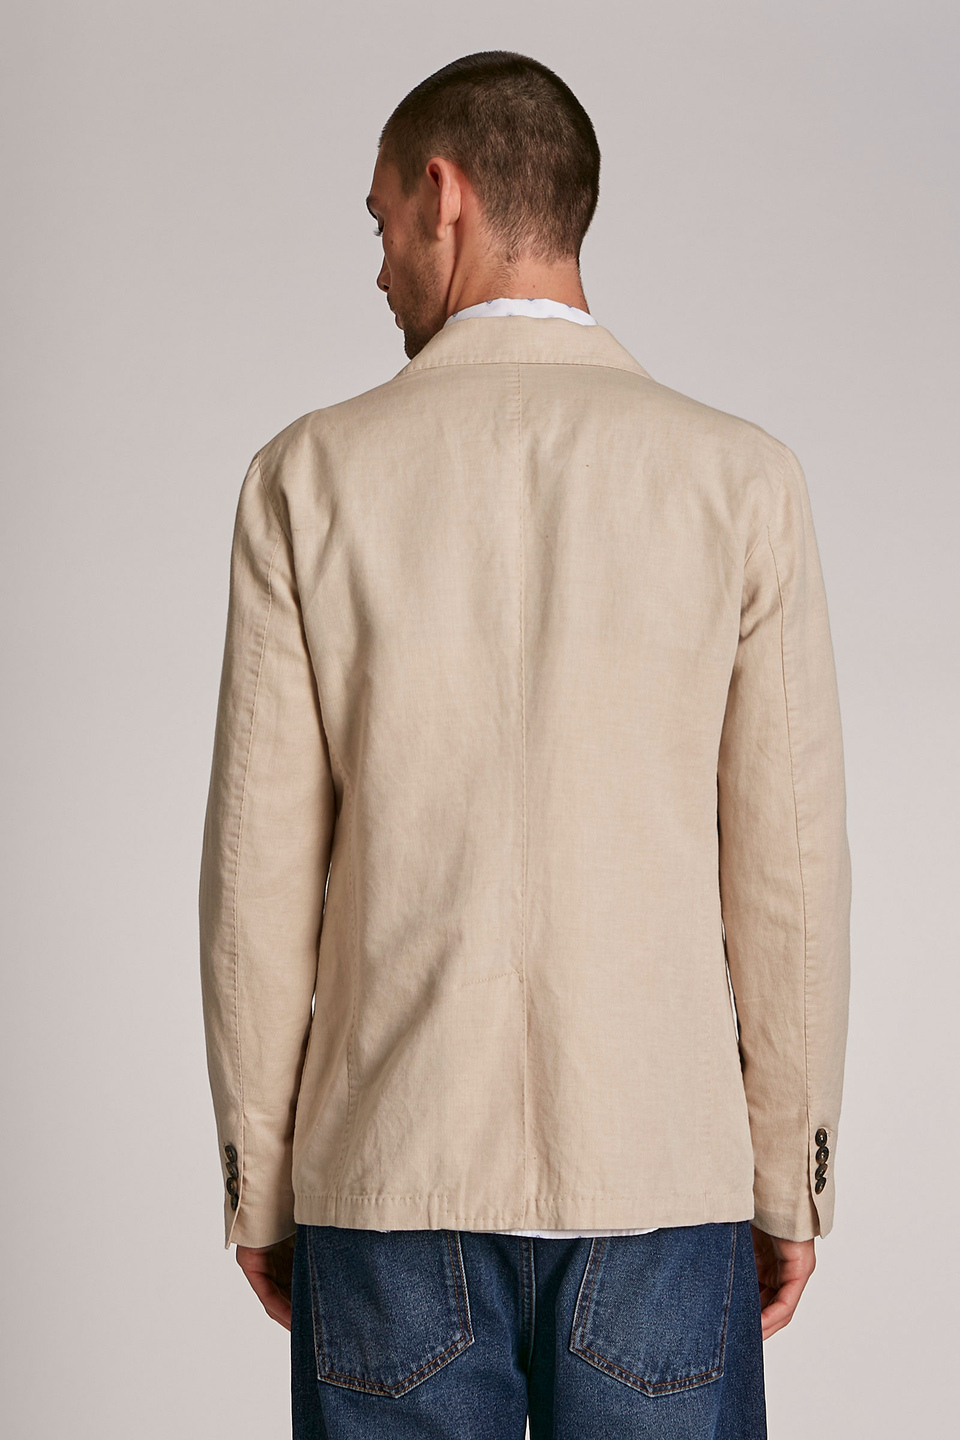 Chaqueta de hombre de mezcla de algodón y lino, modelo blazer, corte regular | La Martina - Official Online Shop